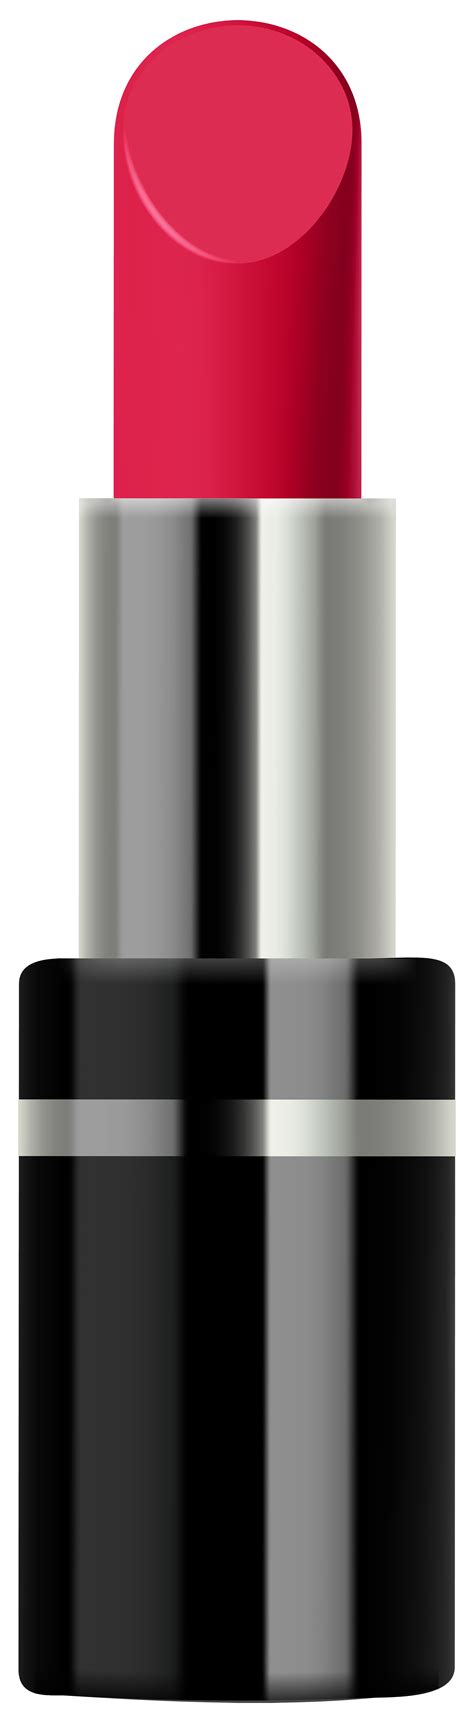 Lipstick Clipart Clipground